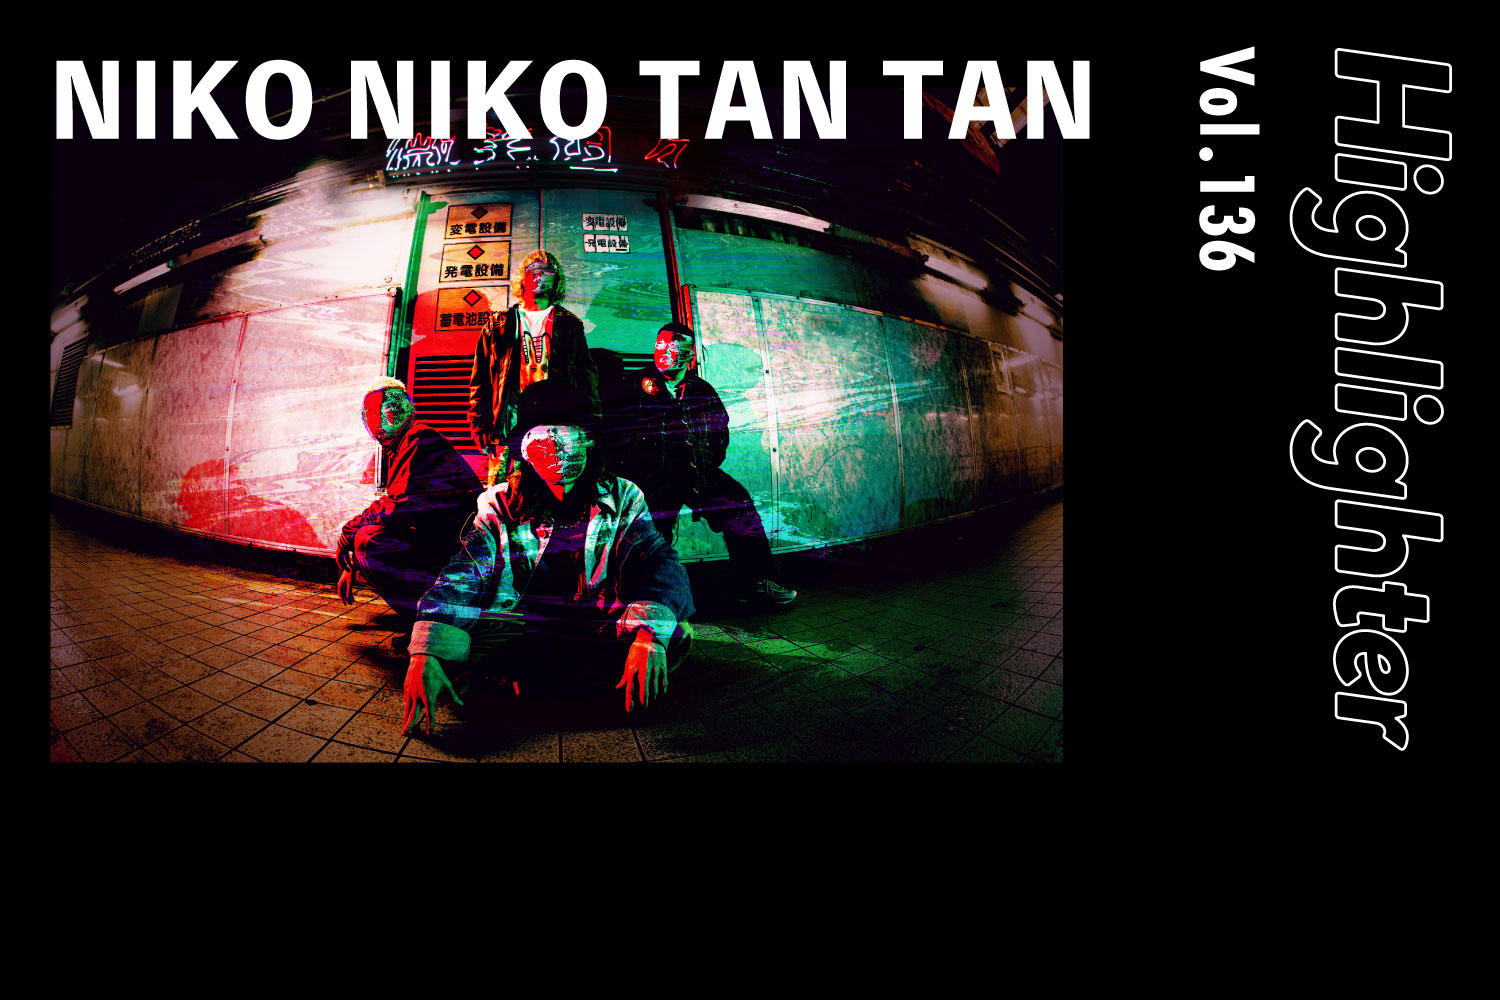 音楽・映像・アートが混合した自由なクリエイティブ「NIKO NIKO TAN TAN」-Highlighter Vol.136-